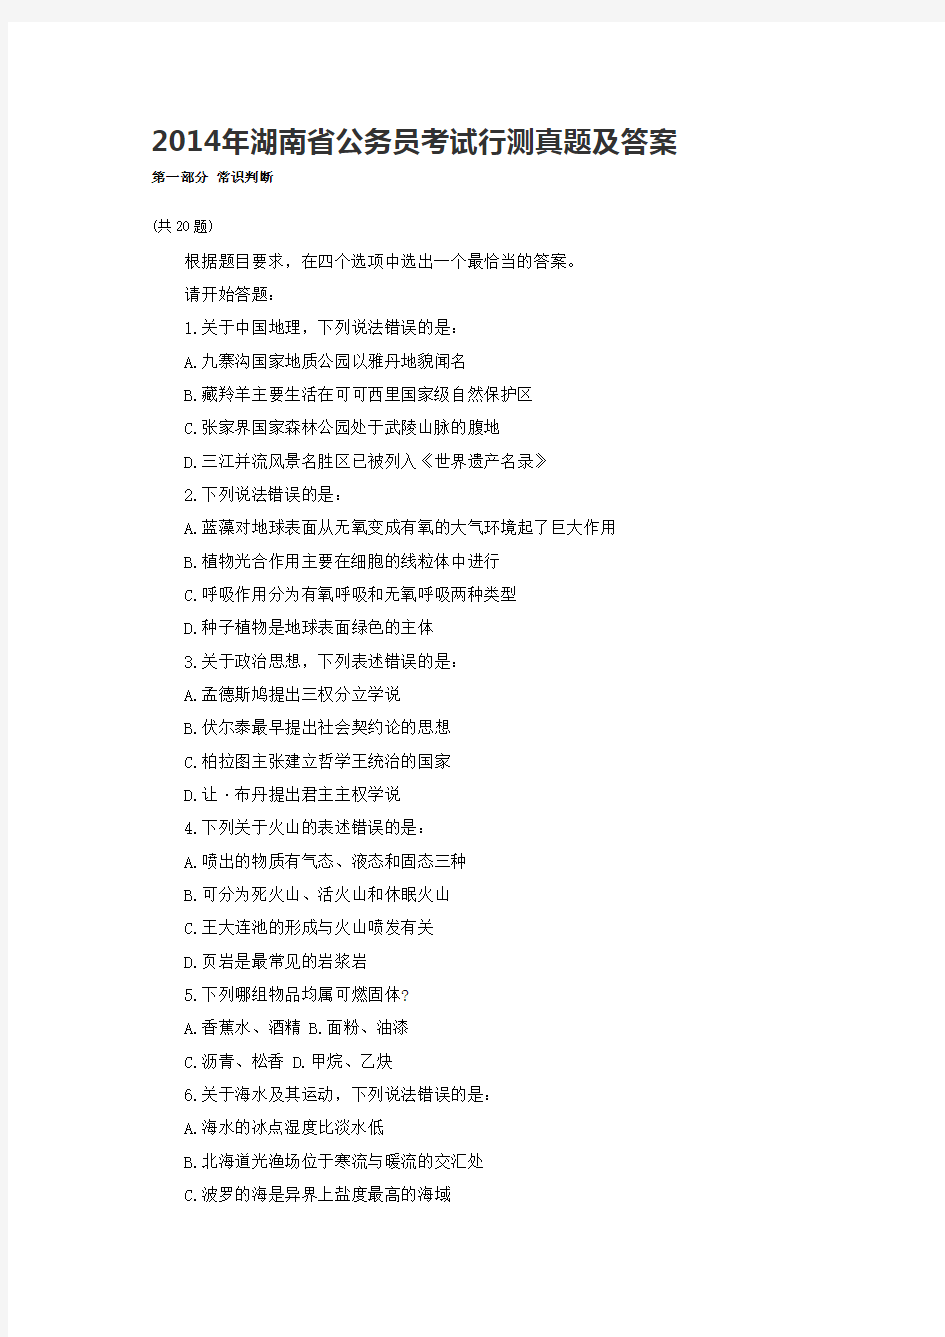 2014年湖南省公务员考试真题及答案解析《行测》